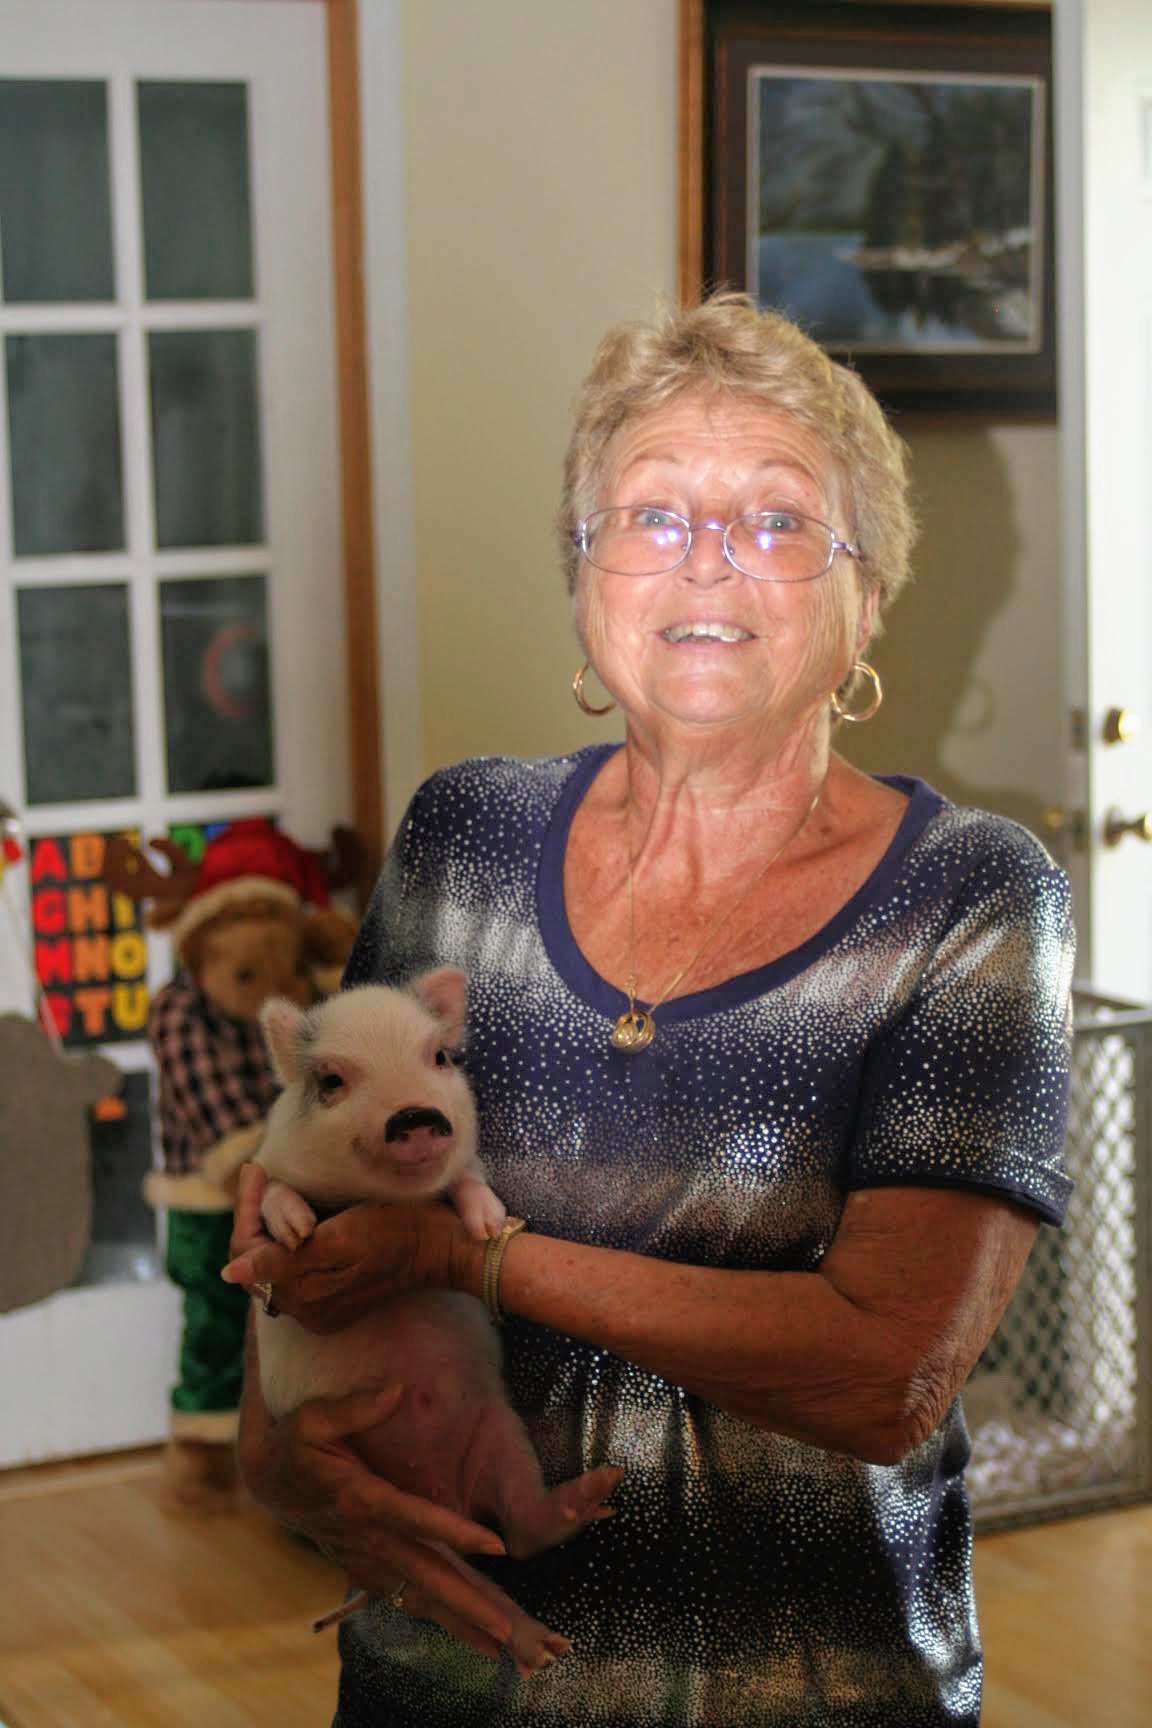 Mom holding a little piggy